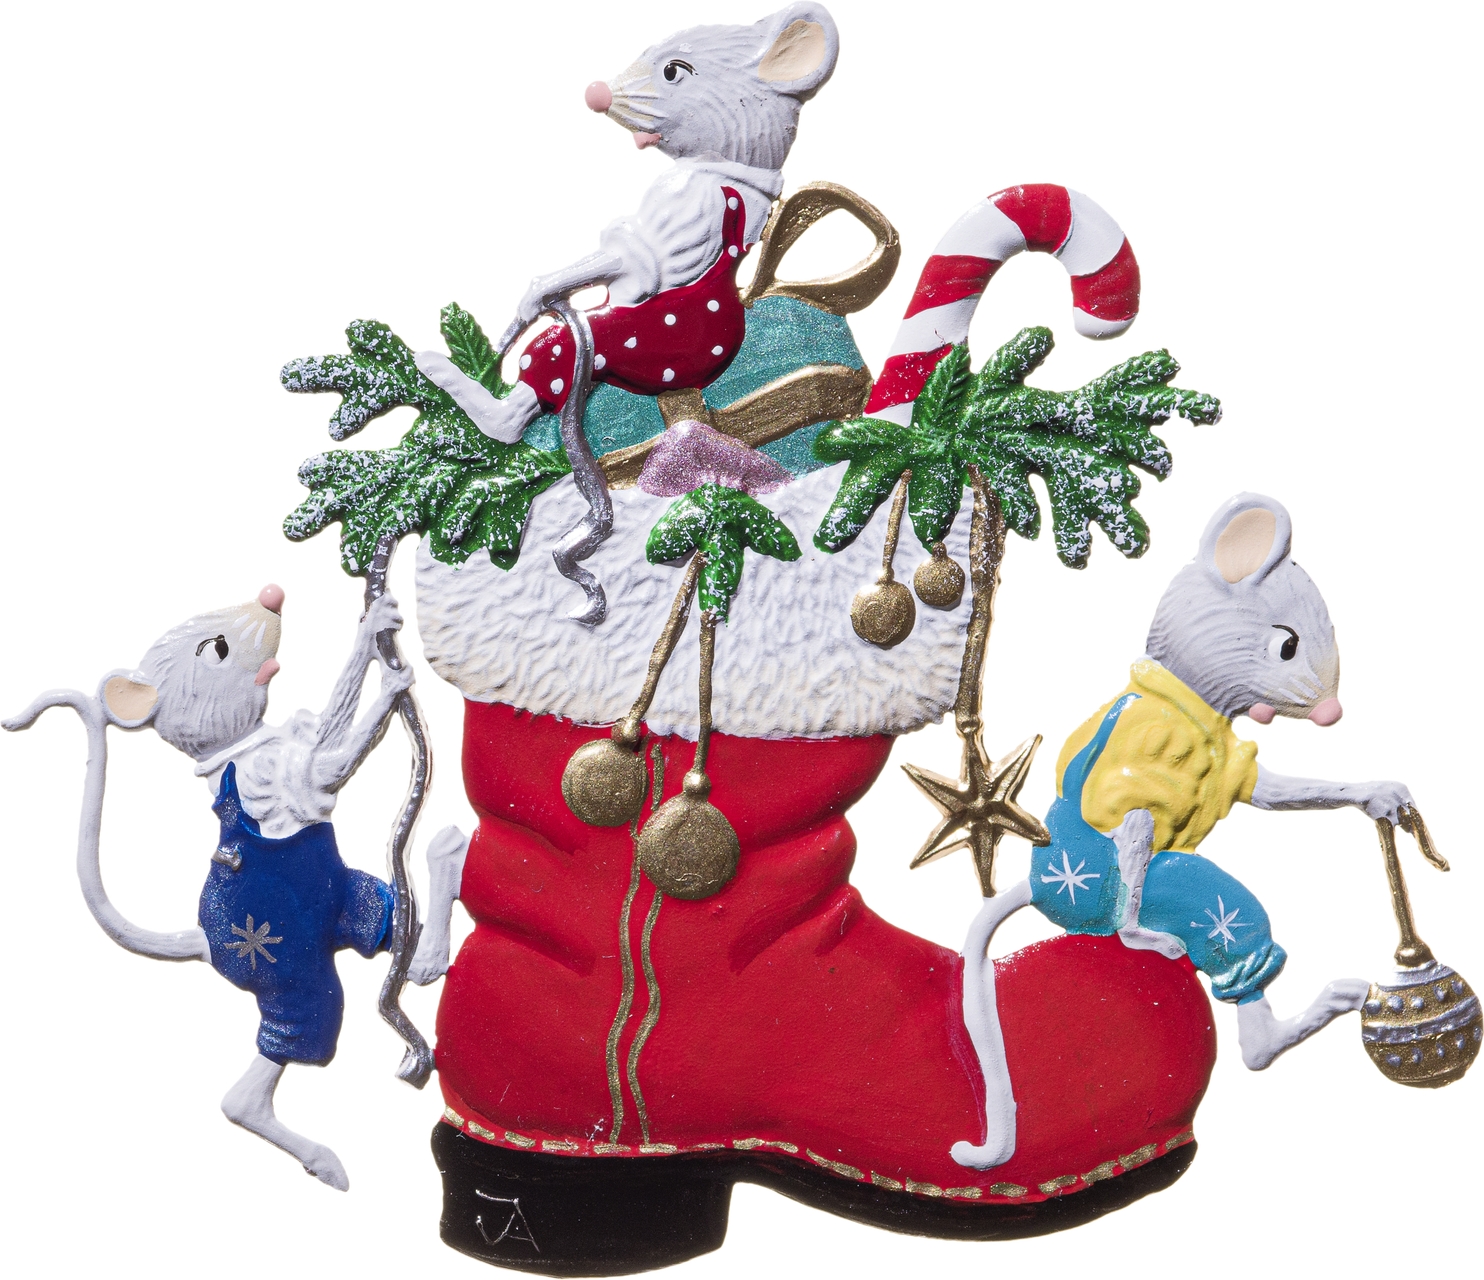 Mäuse erklimmen den Weihnachtsstief